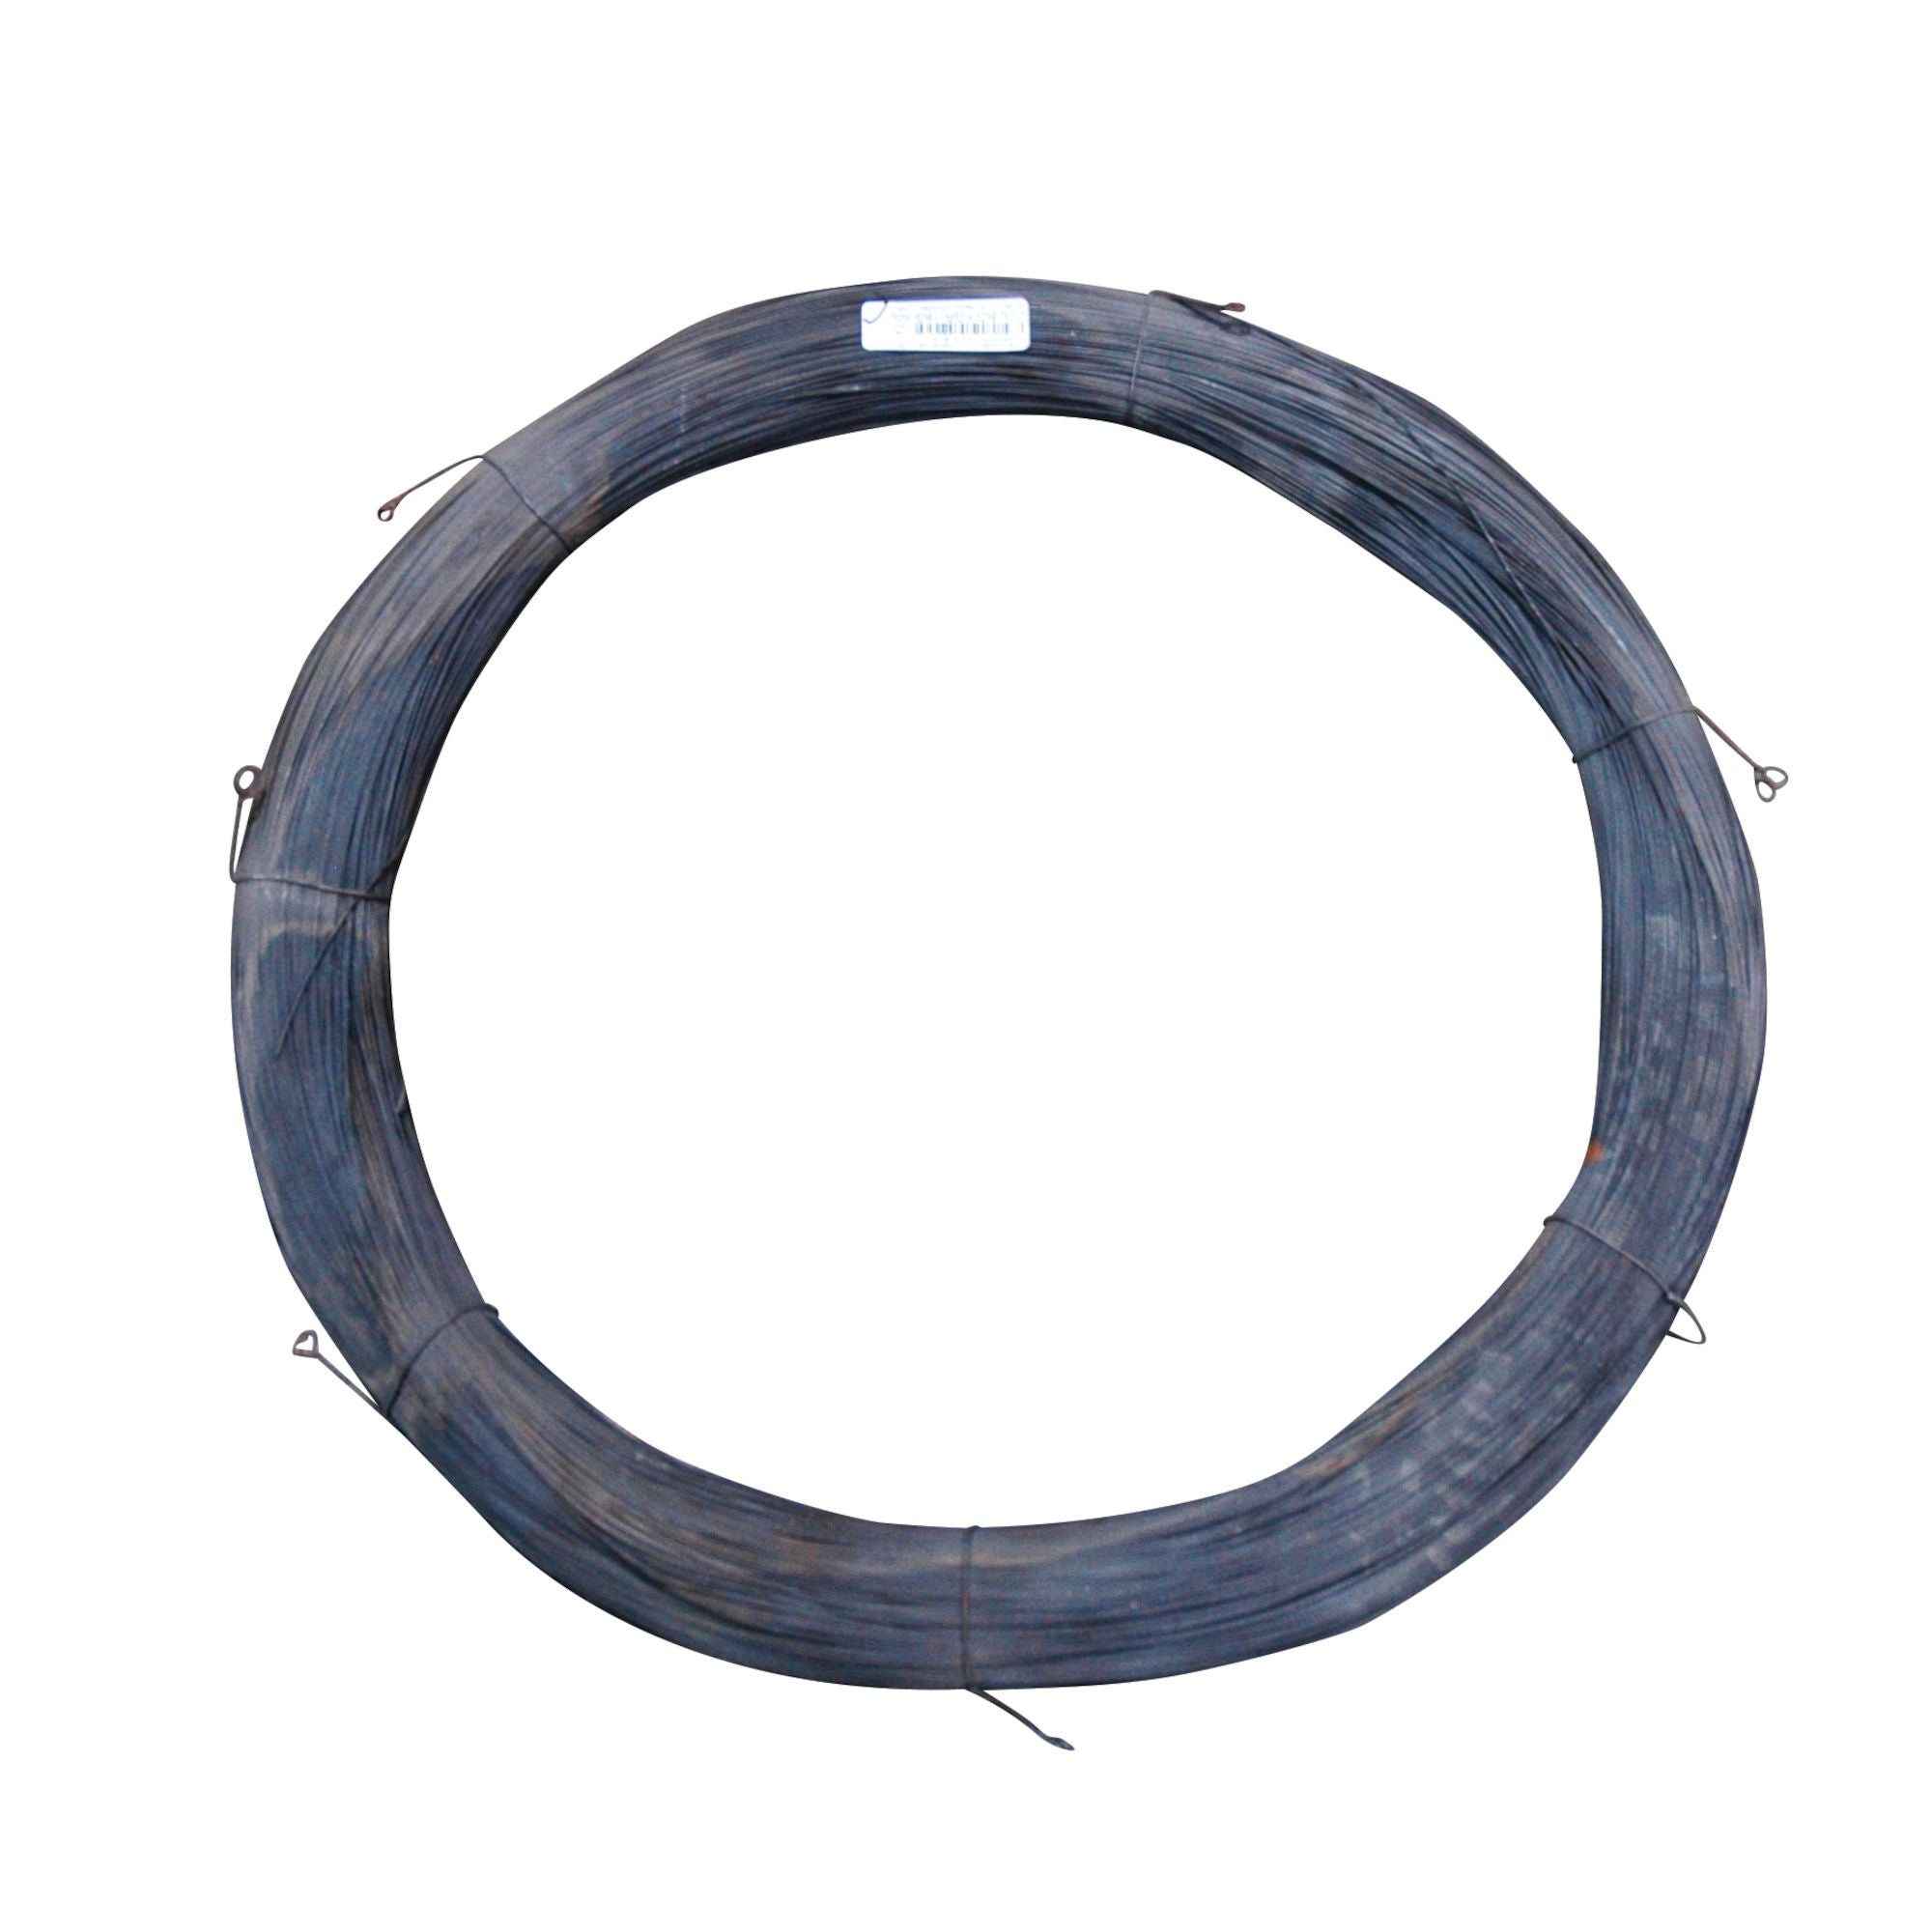 Annealed merchant wire, black (50 lb) - RANGEMASTER